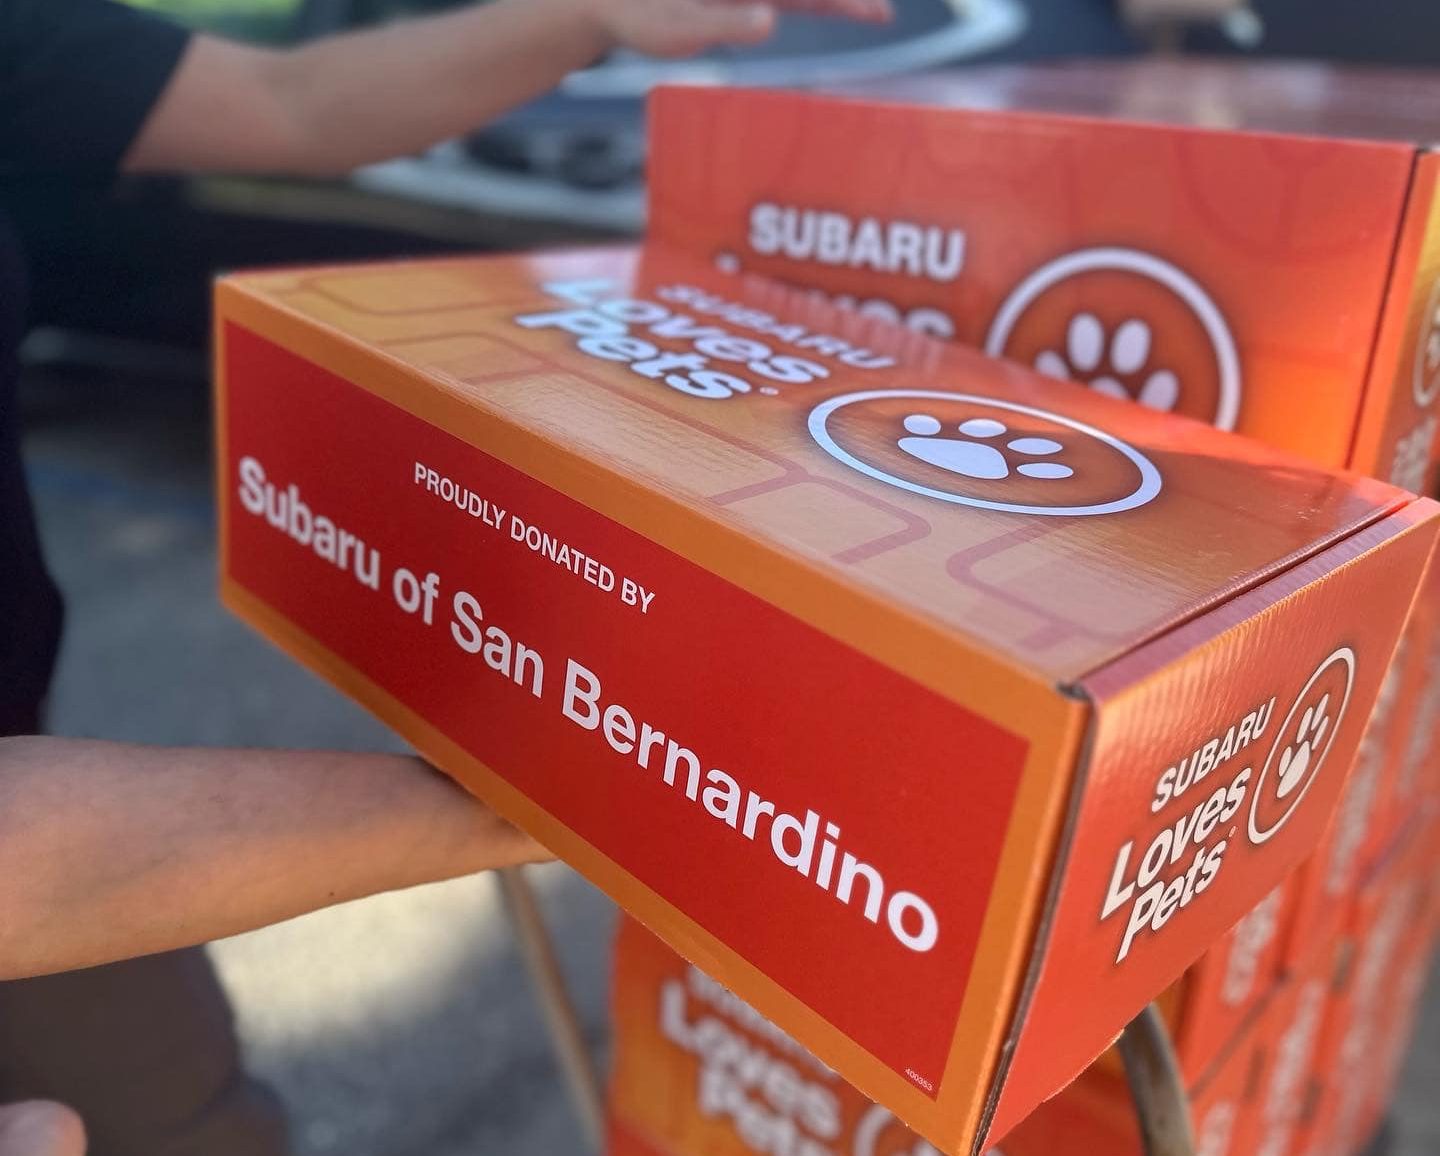 Subaru of San Bernardino Adoption Campaign box